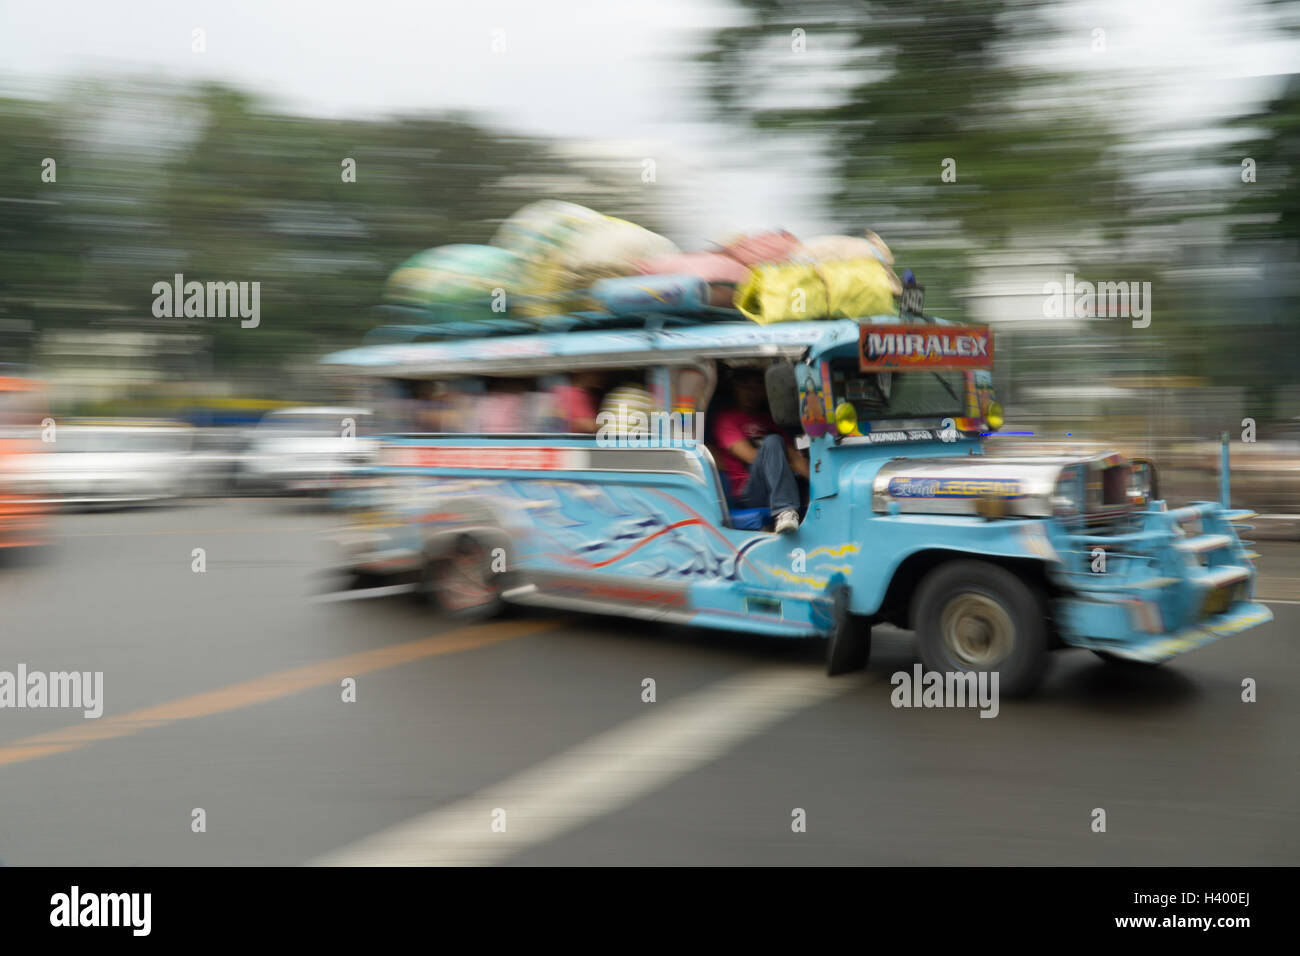 Bassa velocità dell'otturatore della fotocamera esagerando il movimento di un Jeepney di veicoli per il trasporto pubblico a Cebu City, nelle Filippine. Foto Stock